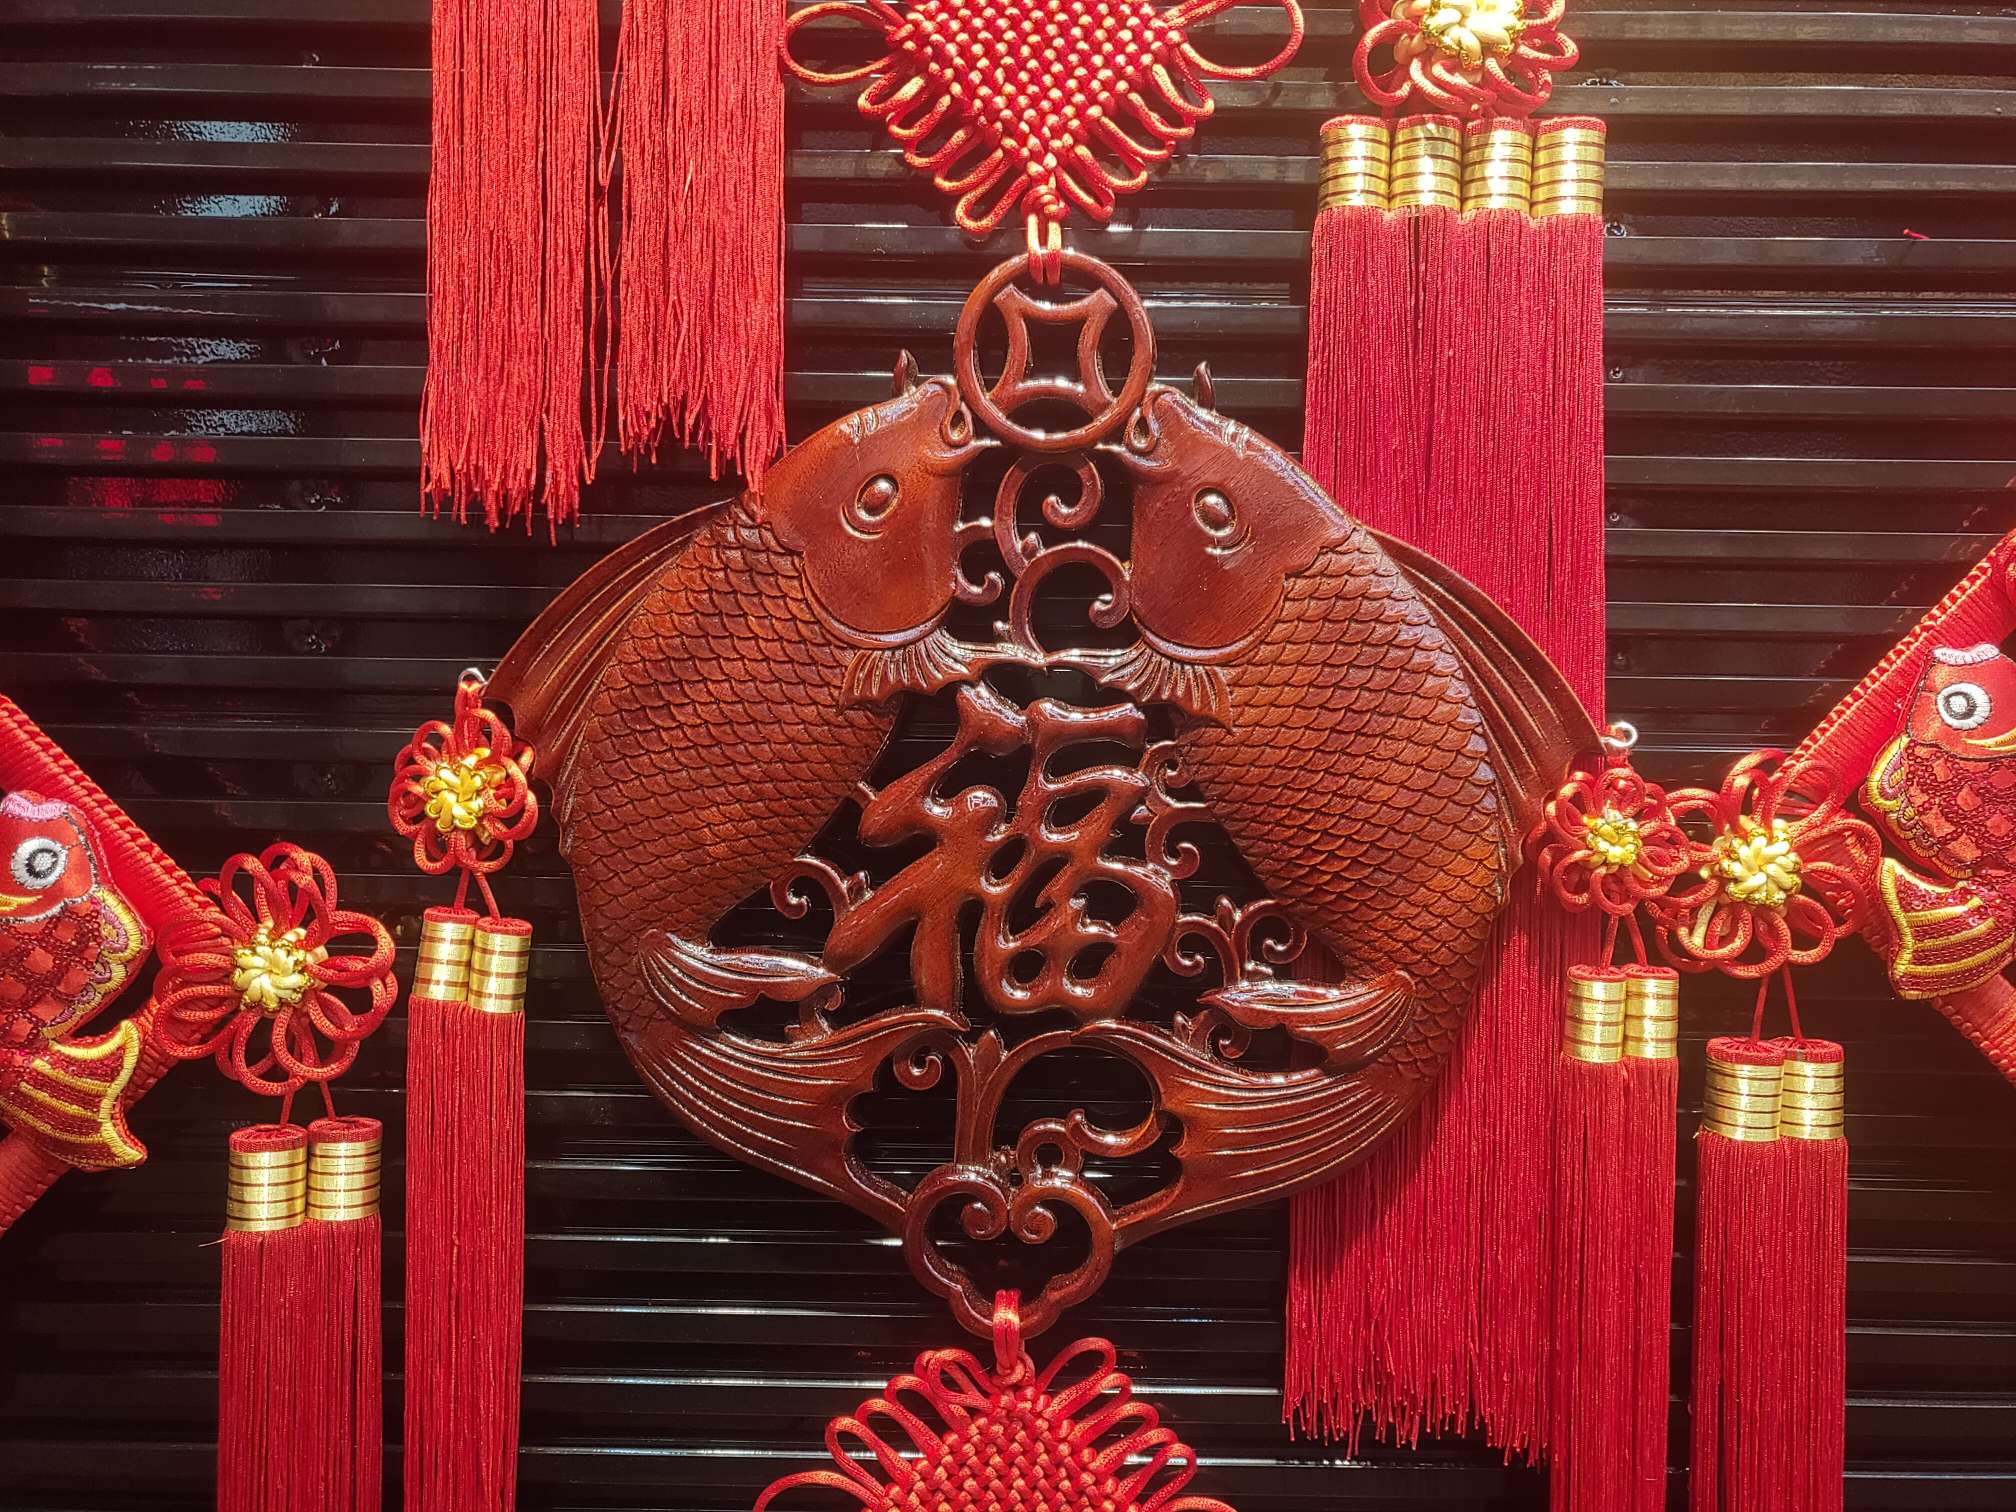 40#方形木雕37春节喜庆用品节日用品红木精品图